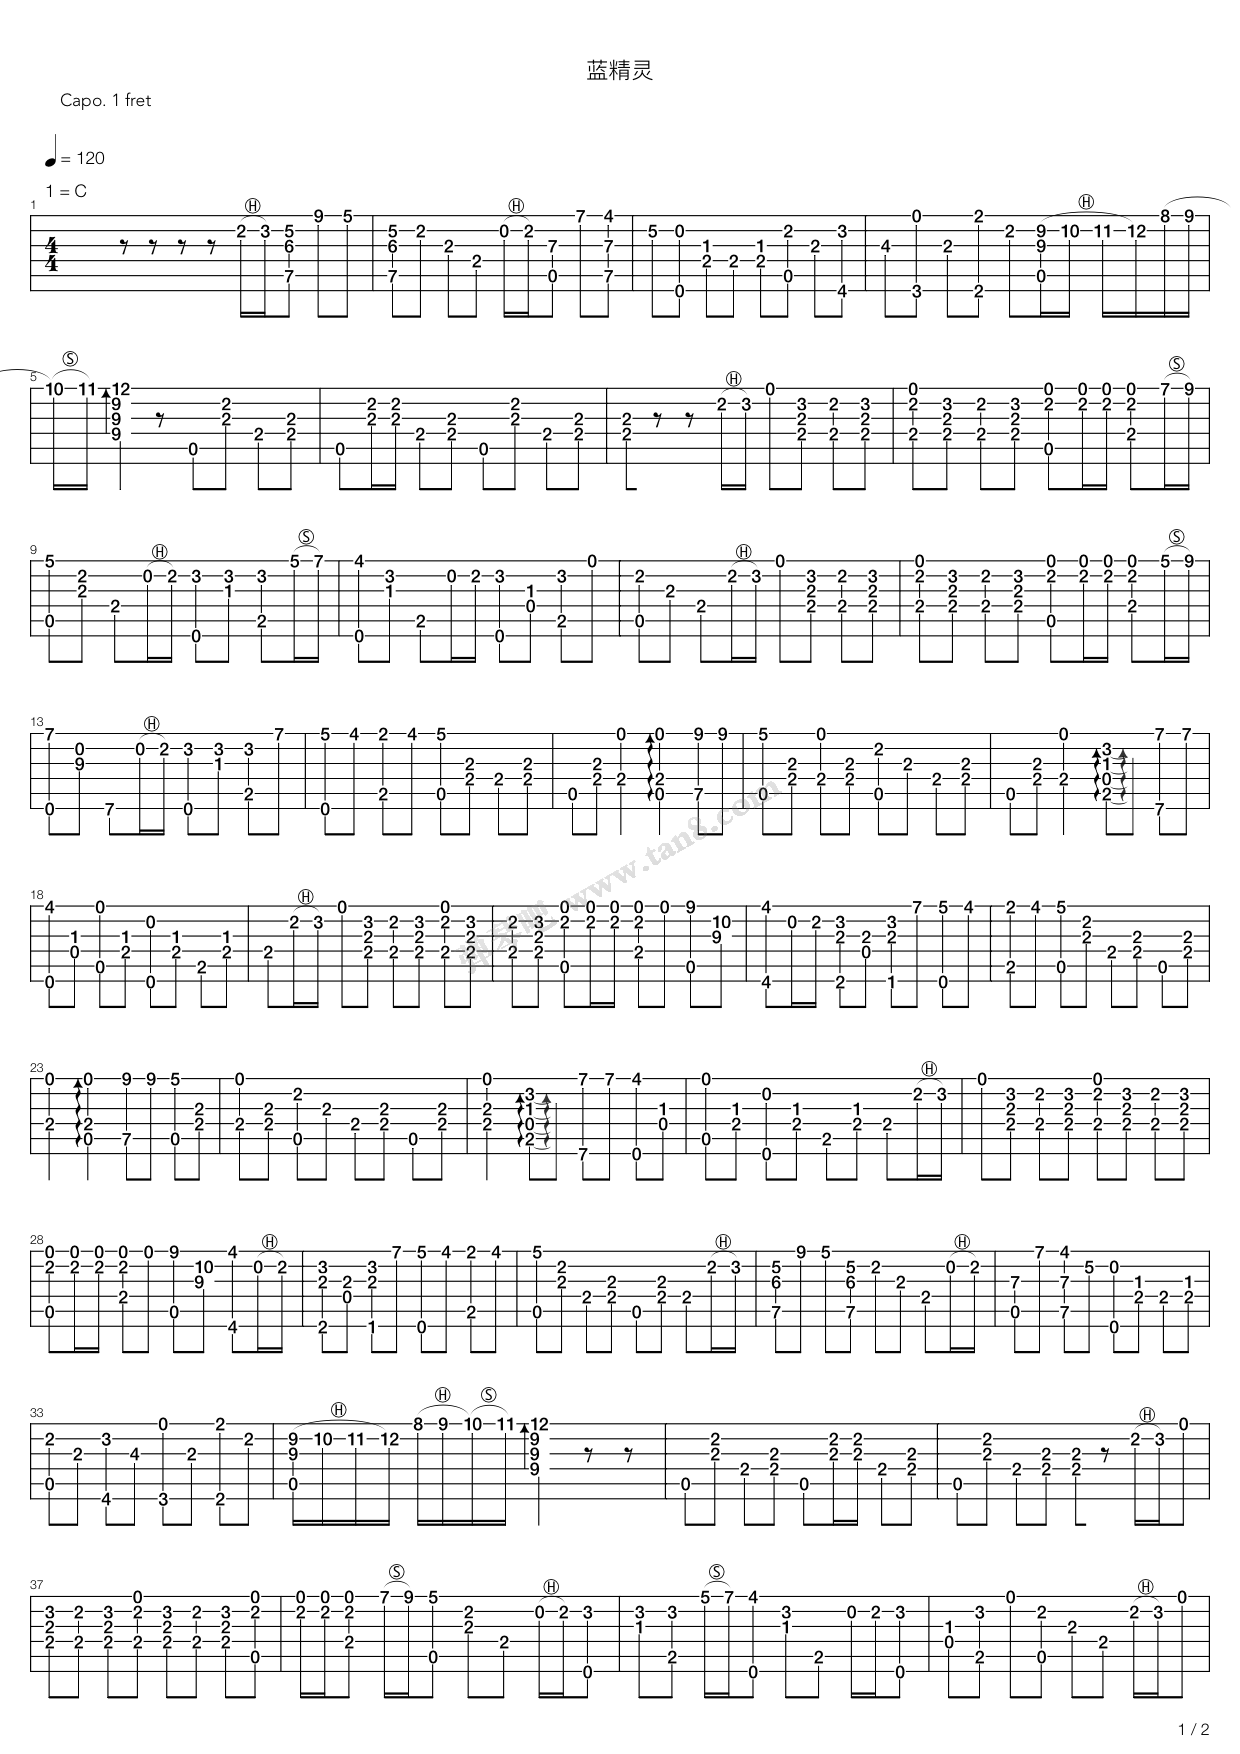 蓝精灵之歌（动画《蓝精灵》主题曲）五线谱预览1-钢琴谱文件（五线谱、双手简谱、数字谱、Midi、PDF）免费下载